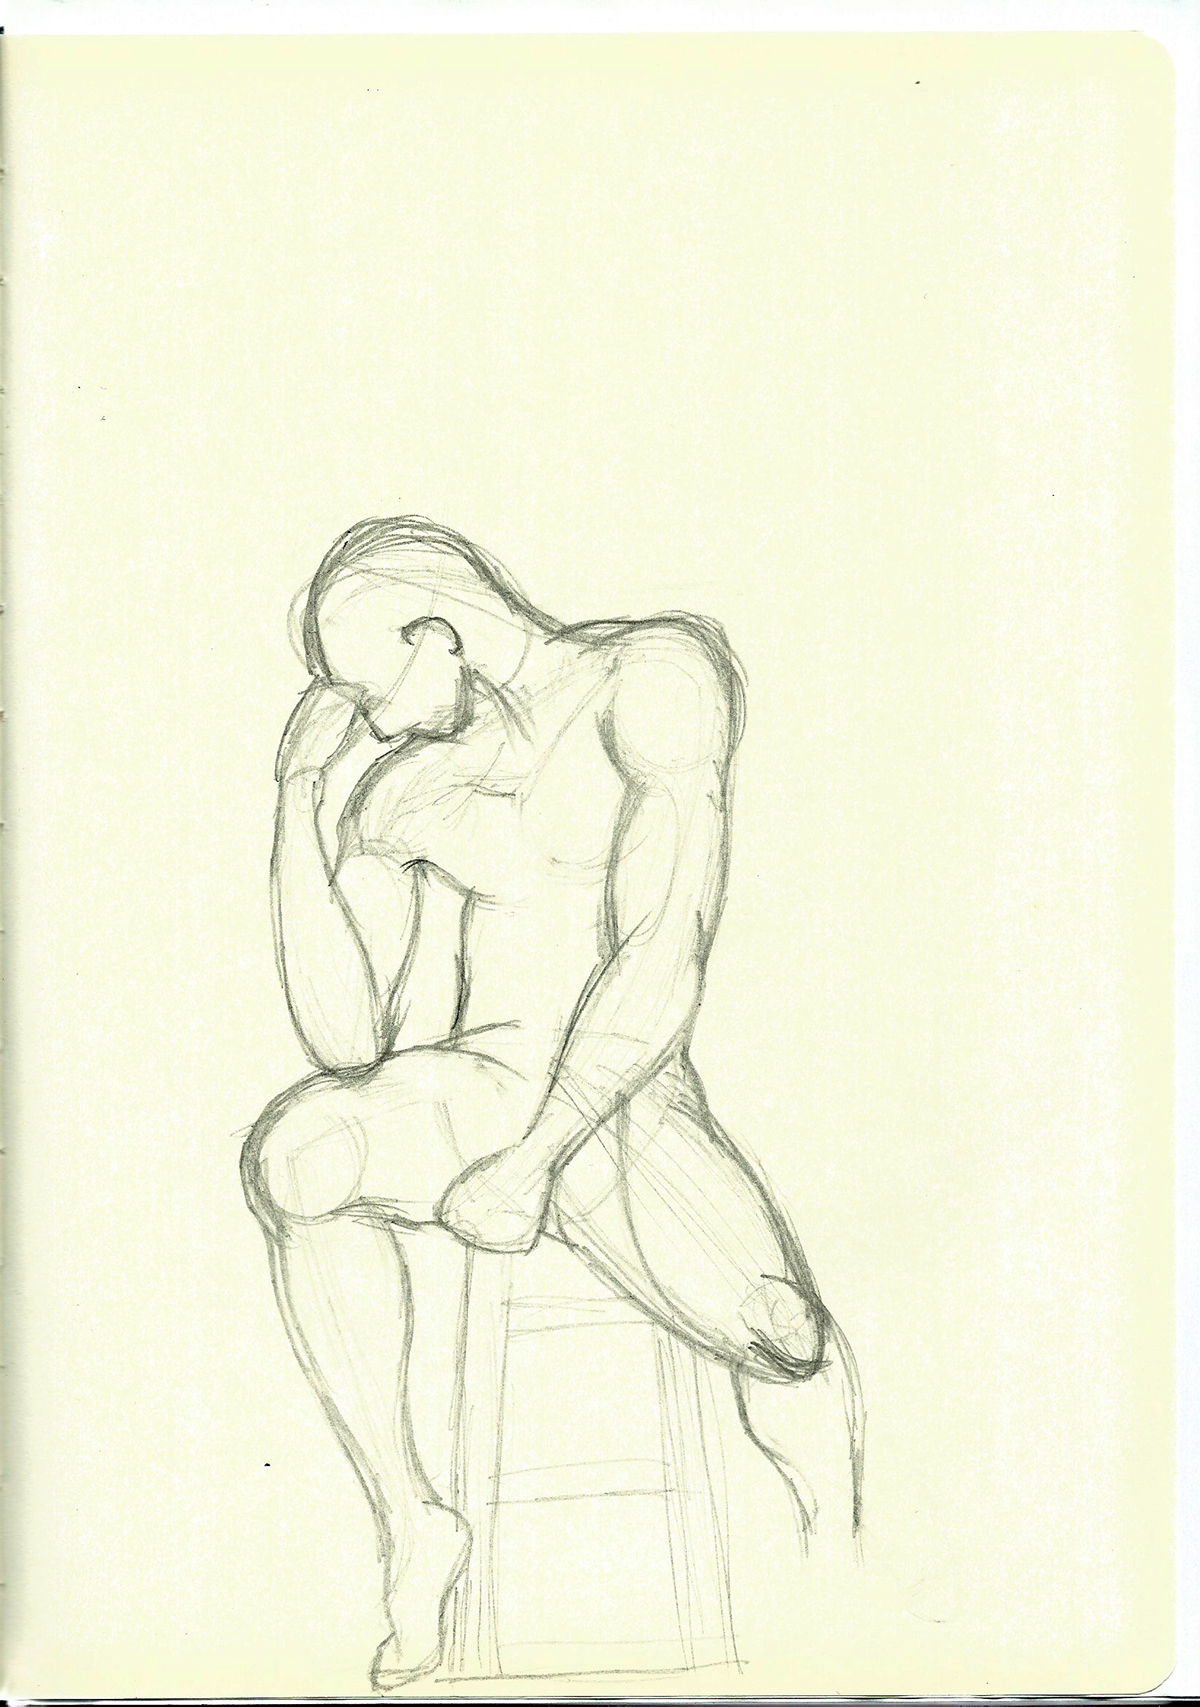 sketch sketching drawings life drawing life sketches human drawings